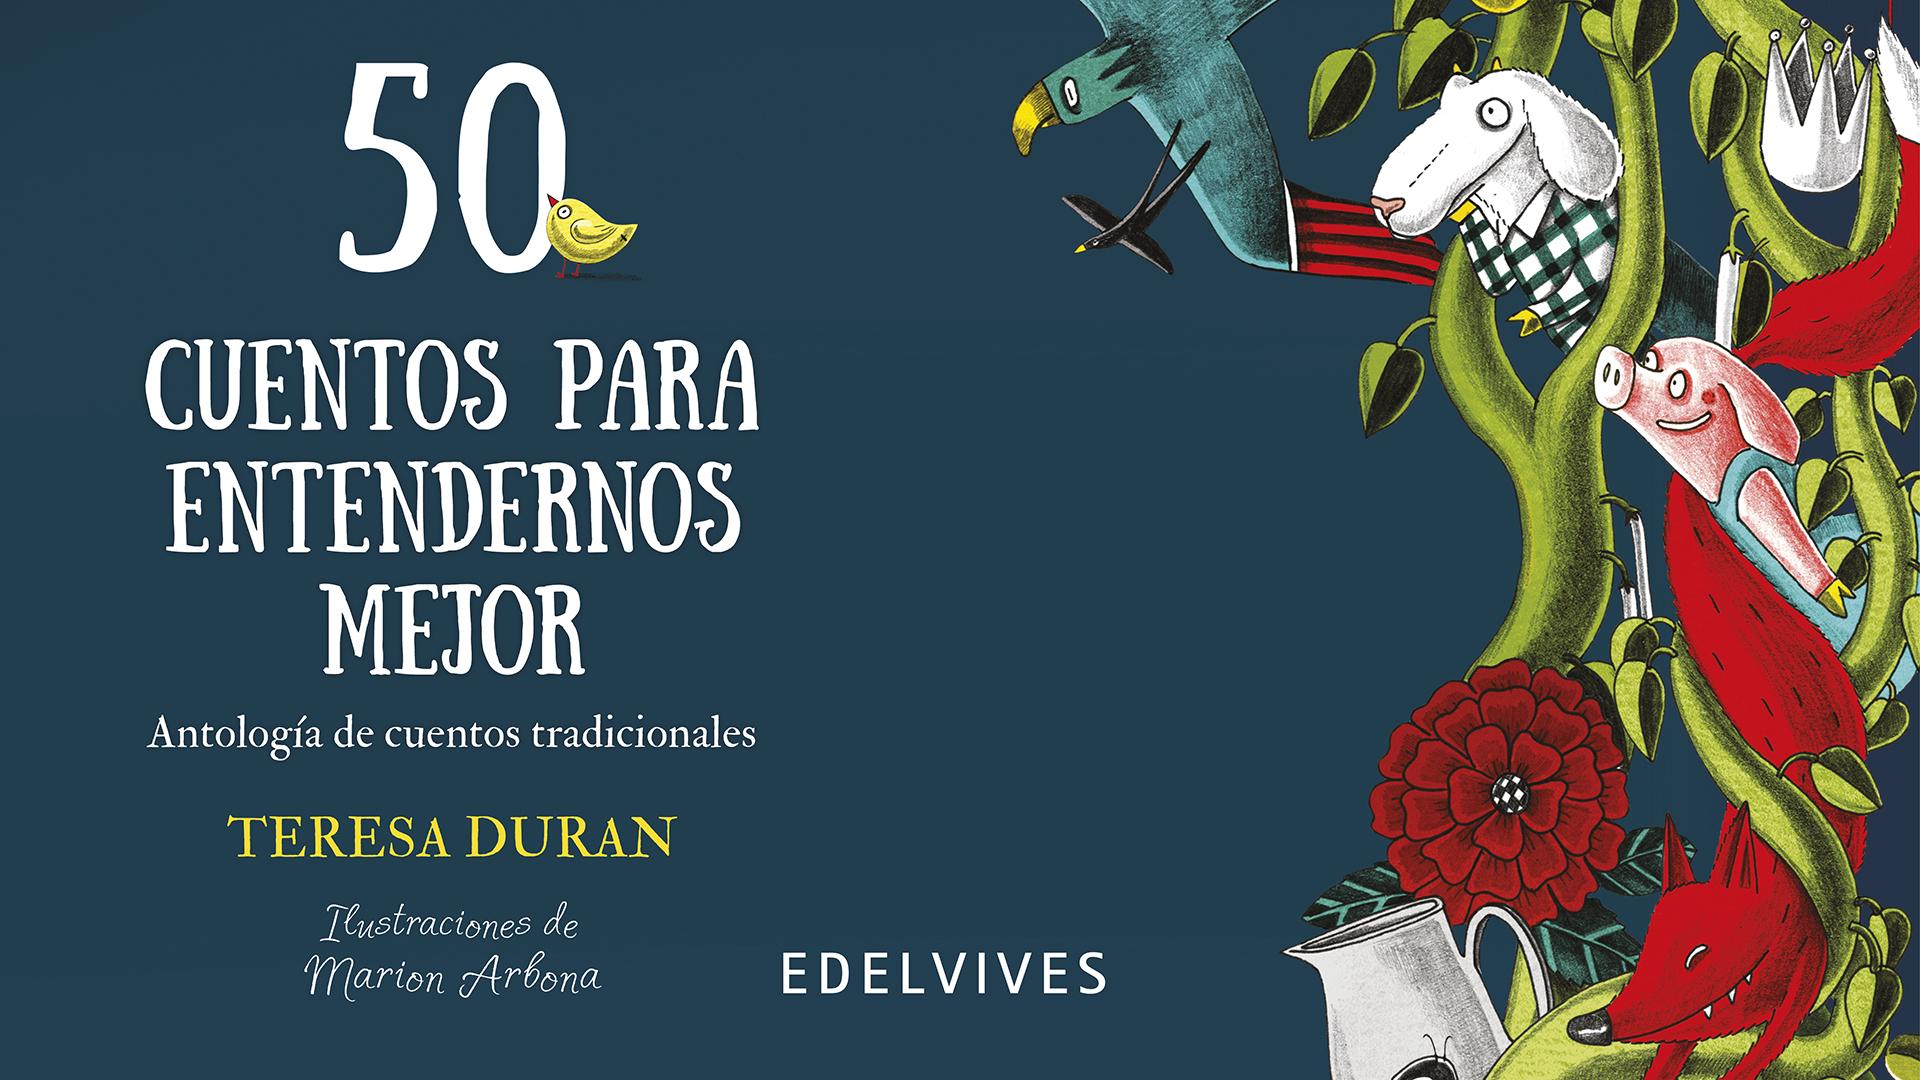 Teresa Duran nos cuenta «50 cuentos para entendernos mejor» | EDELVIVES